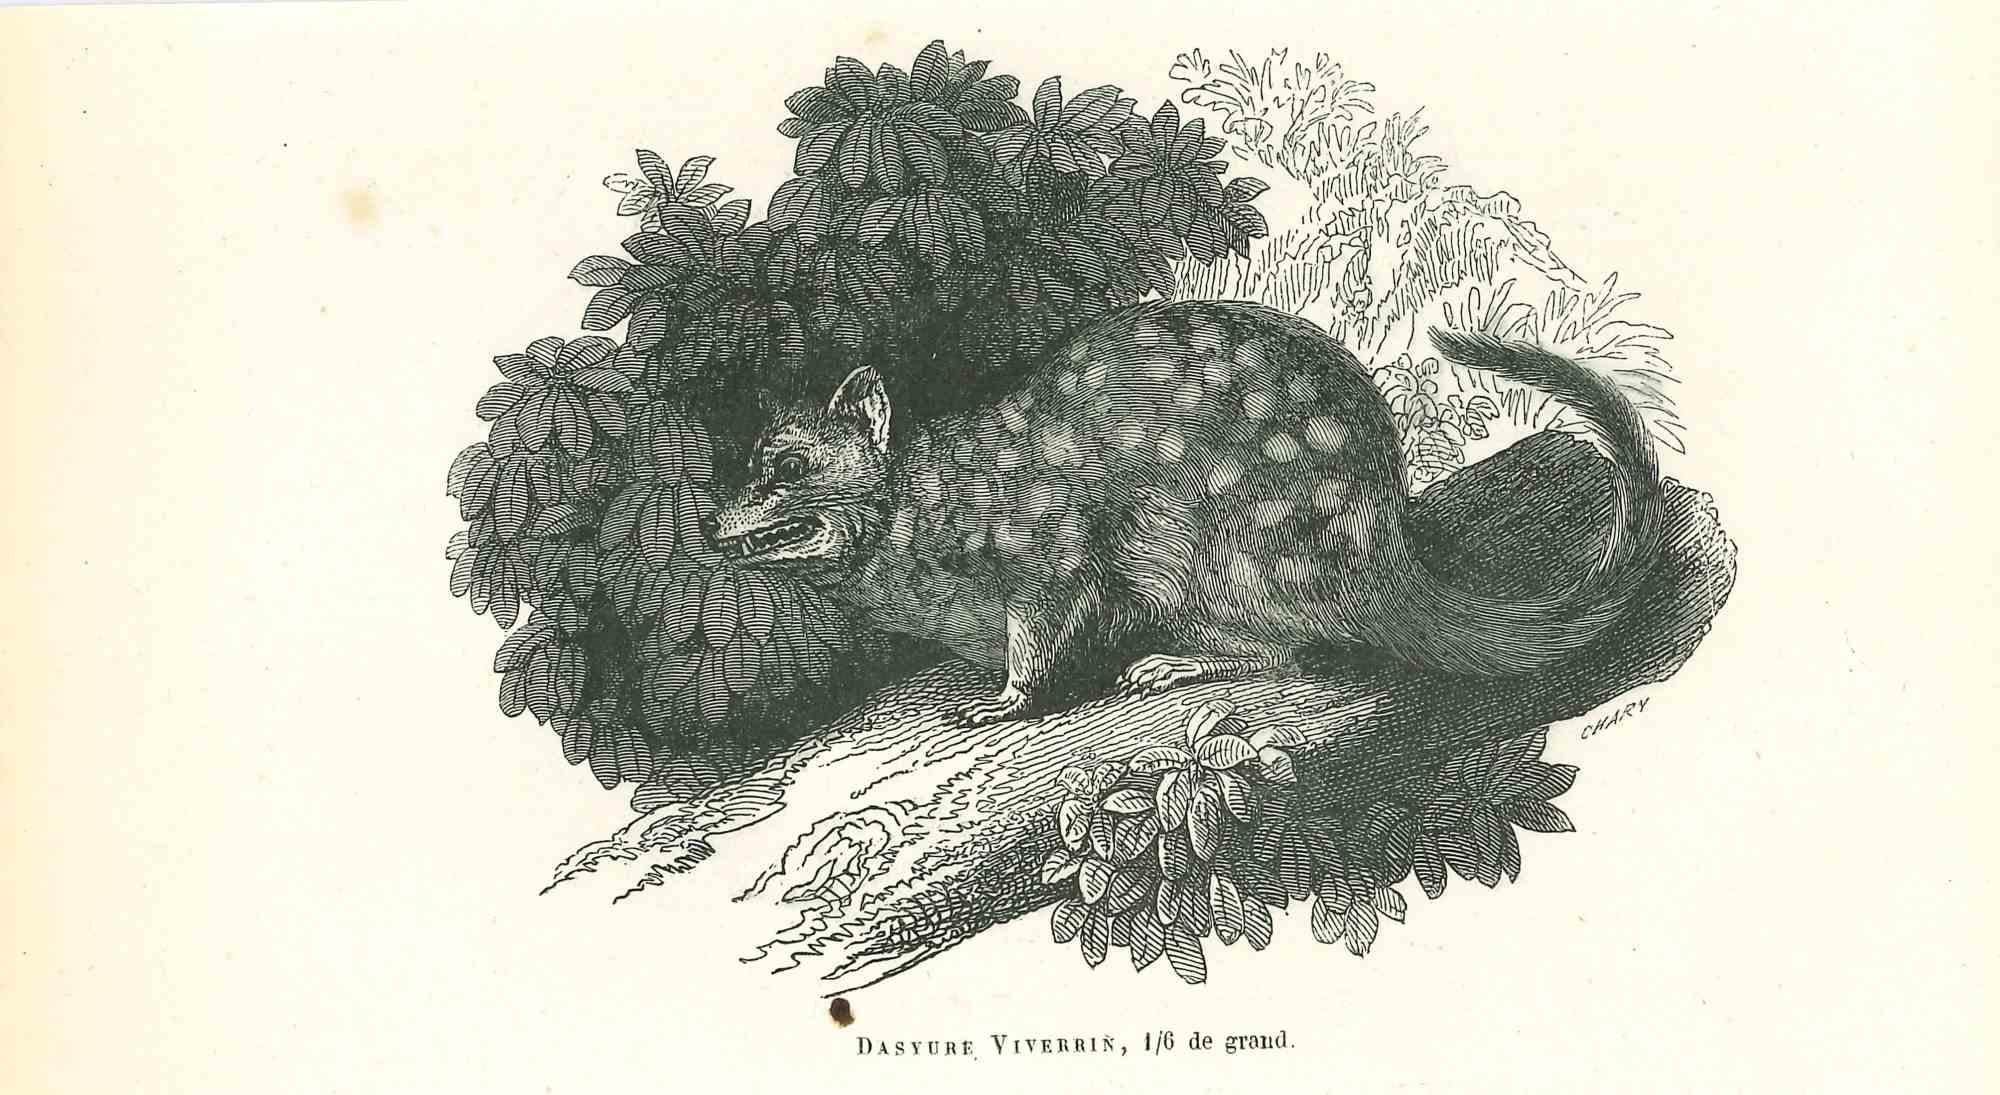 Die gefleckte Maus ist eine Originallithografie auf elfenbeinfarbenem Papier, die von Paul Gervais (1816-1879) geschaffen wurde. Das Kunstwerk stammt aus der Serie "Les Trois Règnes de la Nature" und wurde 1854 veröffentlicht.

Gute